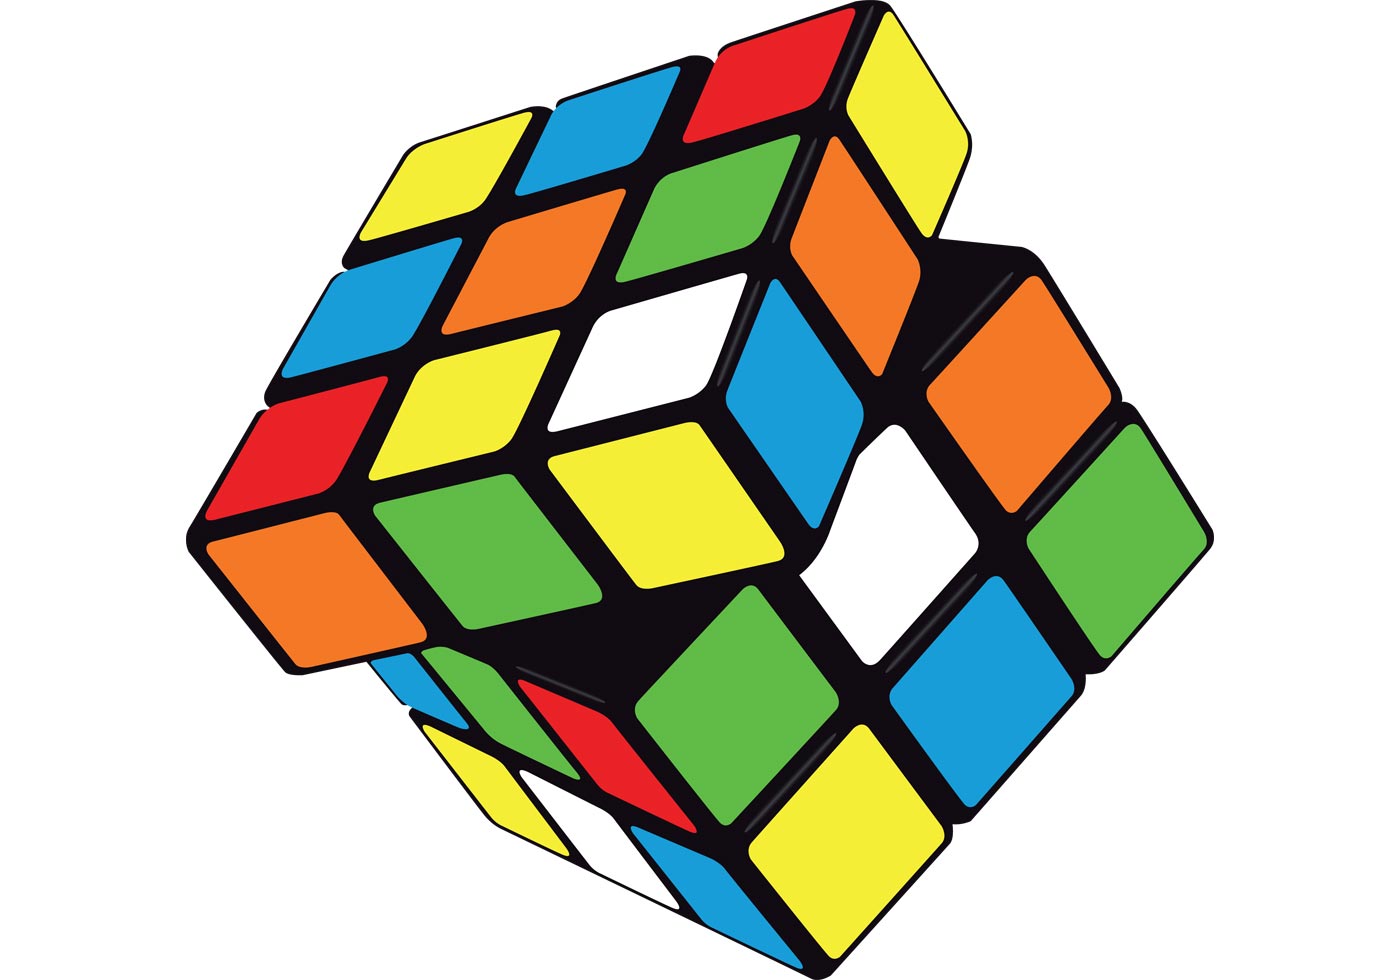 روبیک magic cube